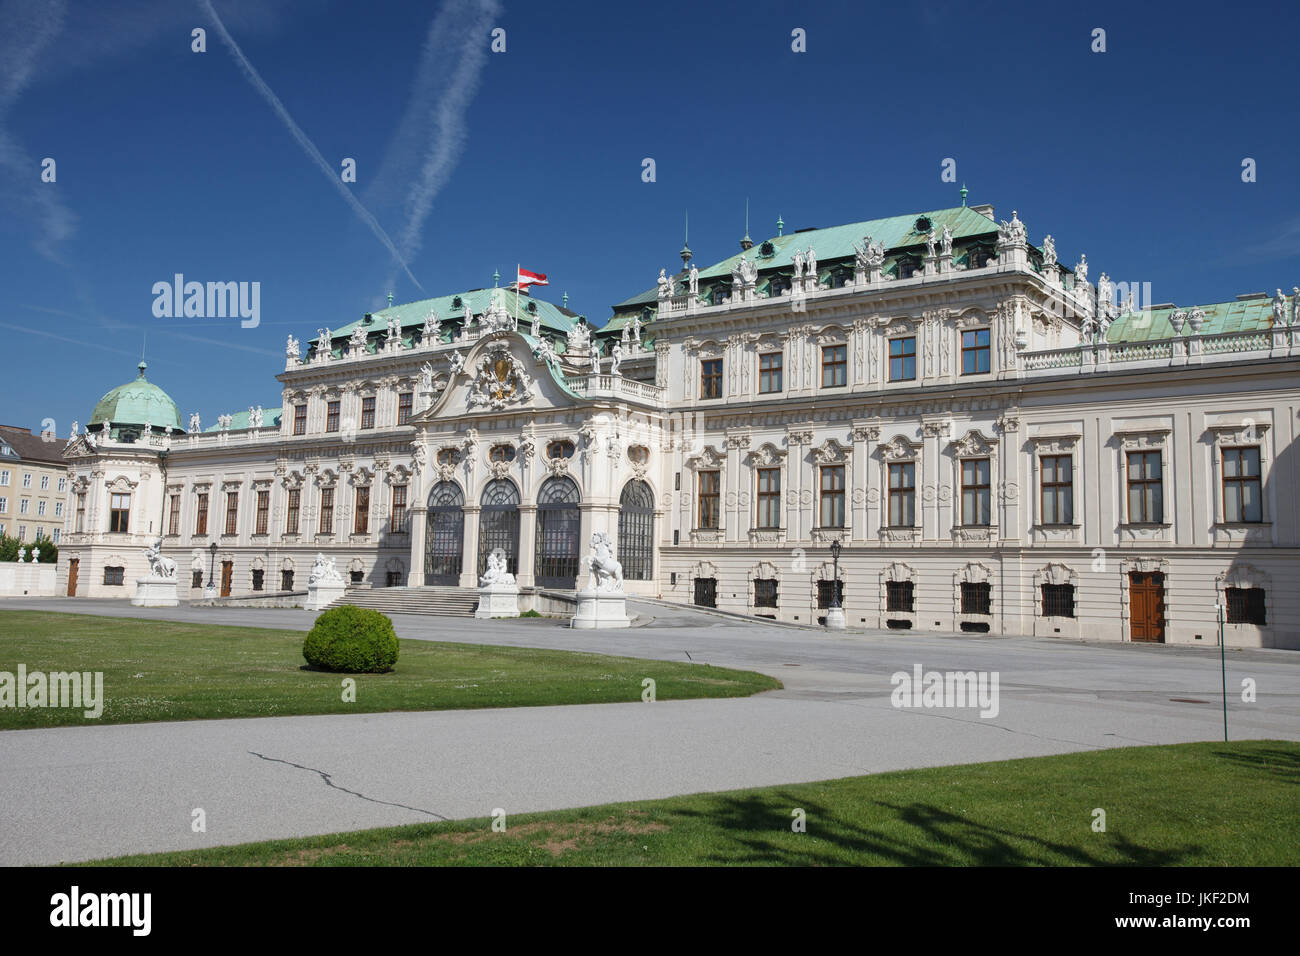 Vienna, Austria. Bellissima vista del famoso Schloss Belvedere residenza estiva per il principe Eugenio di Savoia, in Wien capitale dell impero asburgico Foto Stock